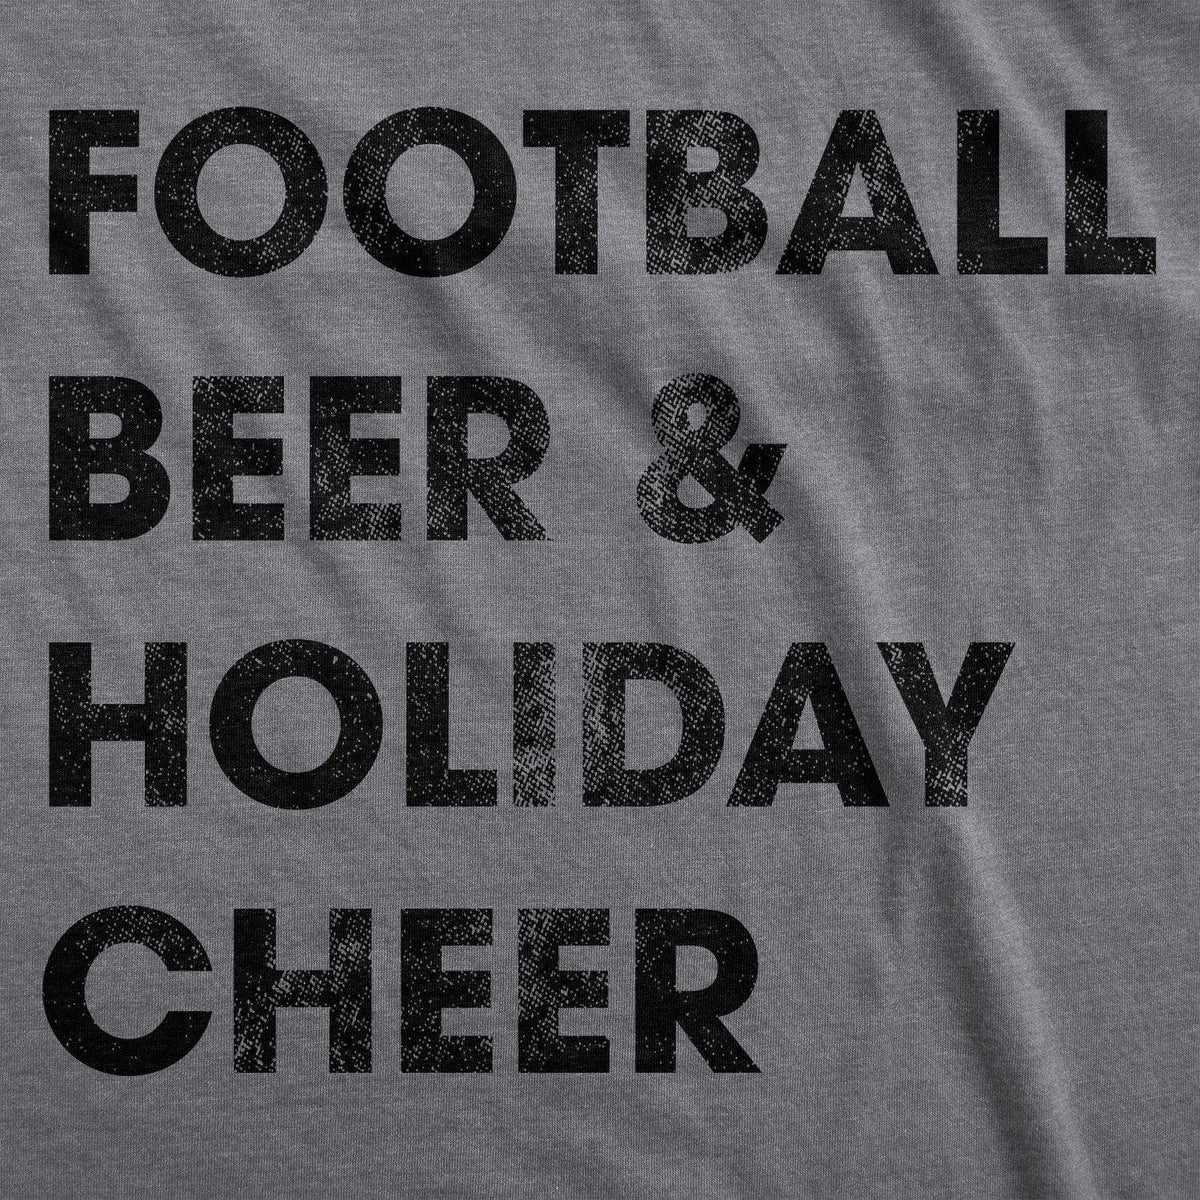 Football Beer And Holiday Cheer Men&#39;s Tshirt - Crazy Dog T-Shirts